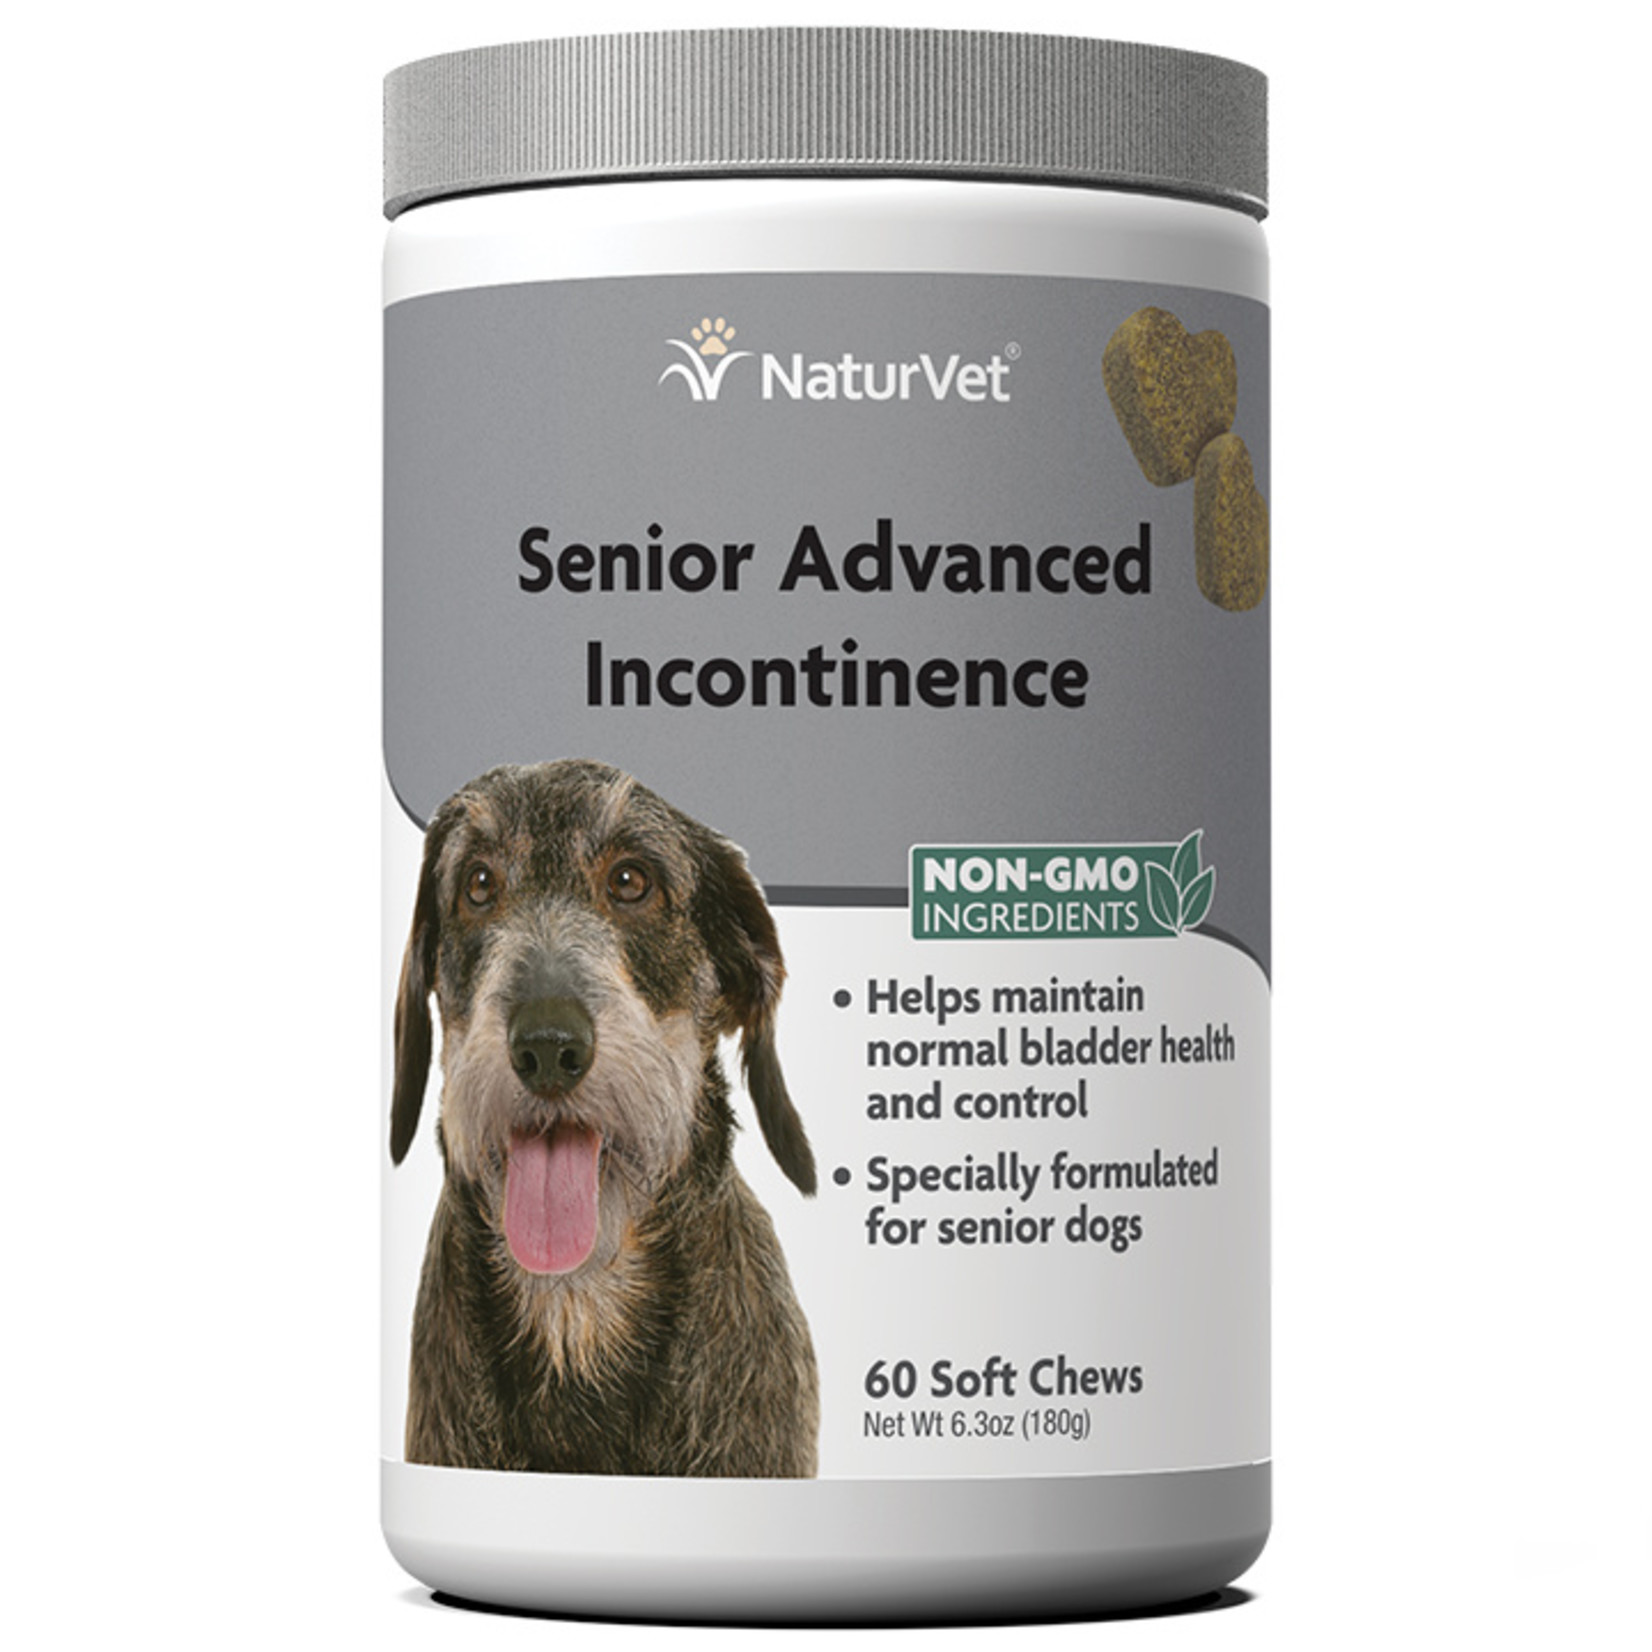 NaturVet NaturVet Senior Advanced Incontinence Soft Chews